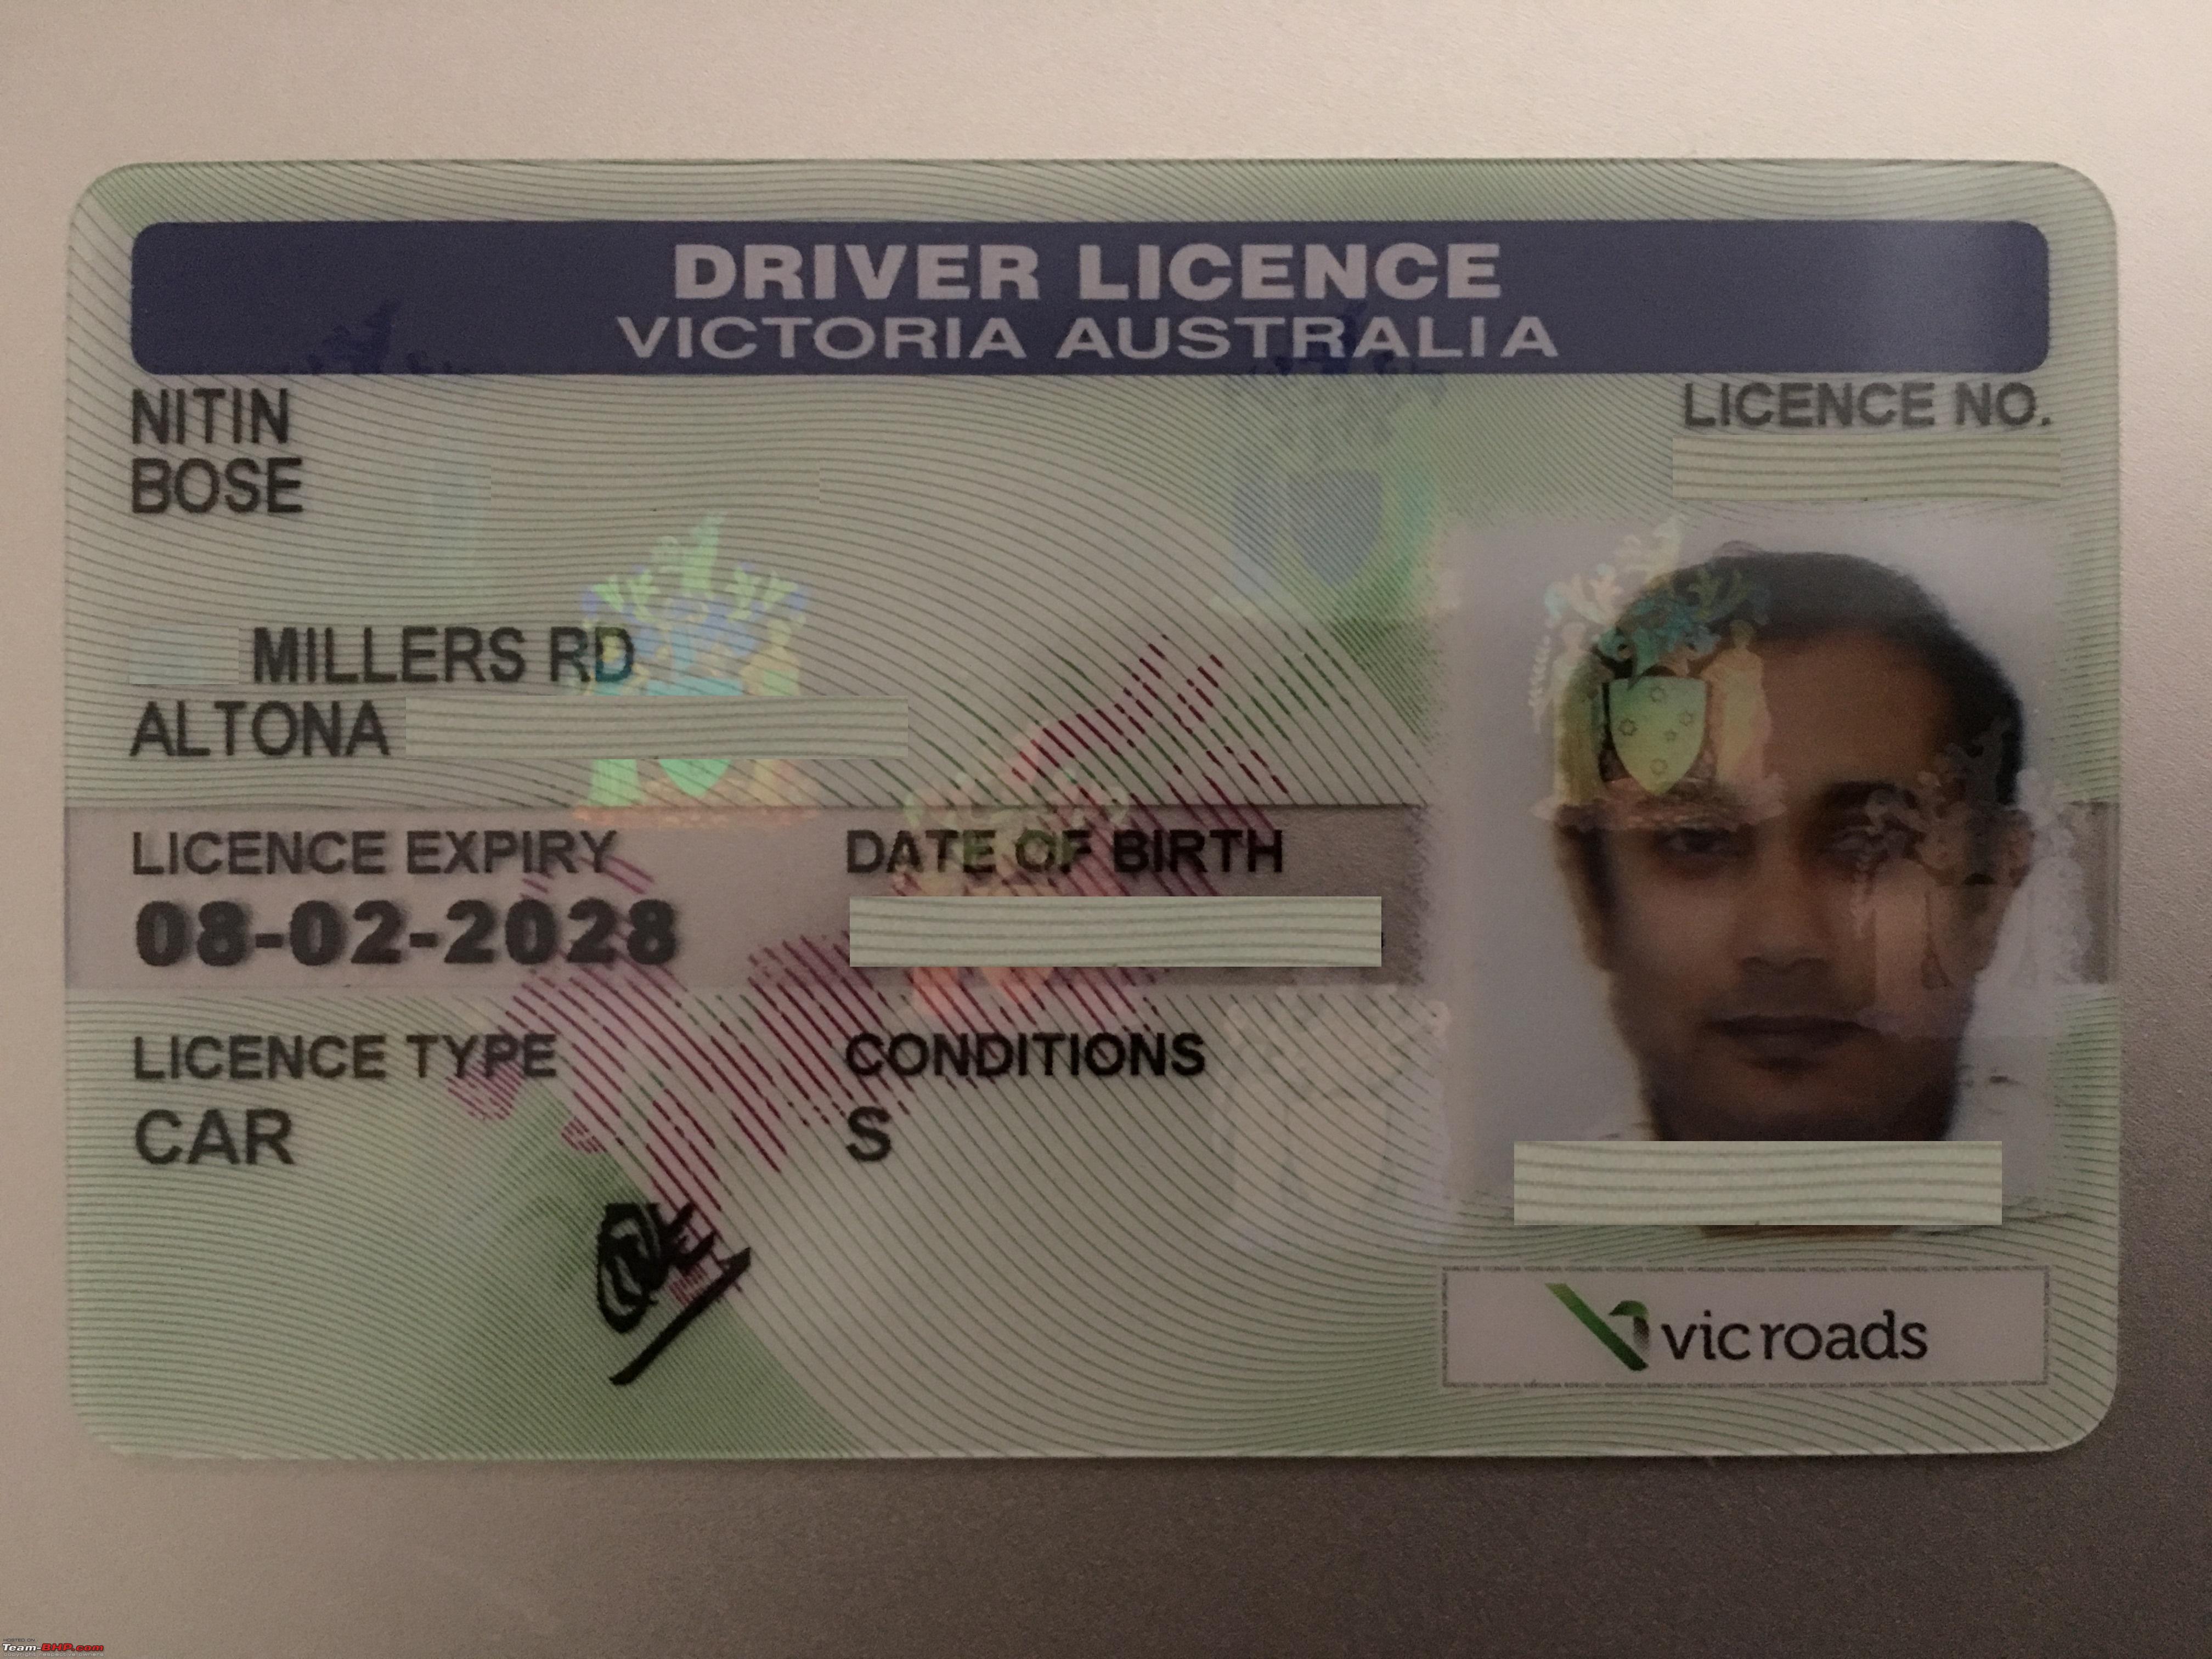 udvide tøj tæmme Australia! I got my Victorian Driver's License - Team-BHP